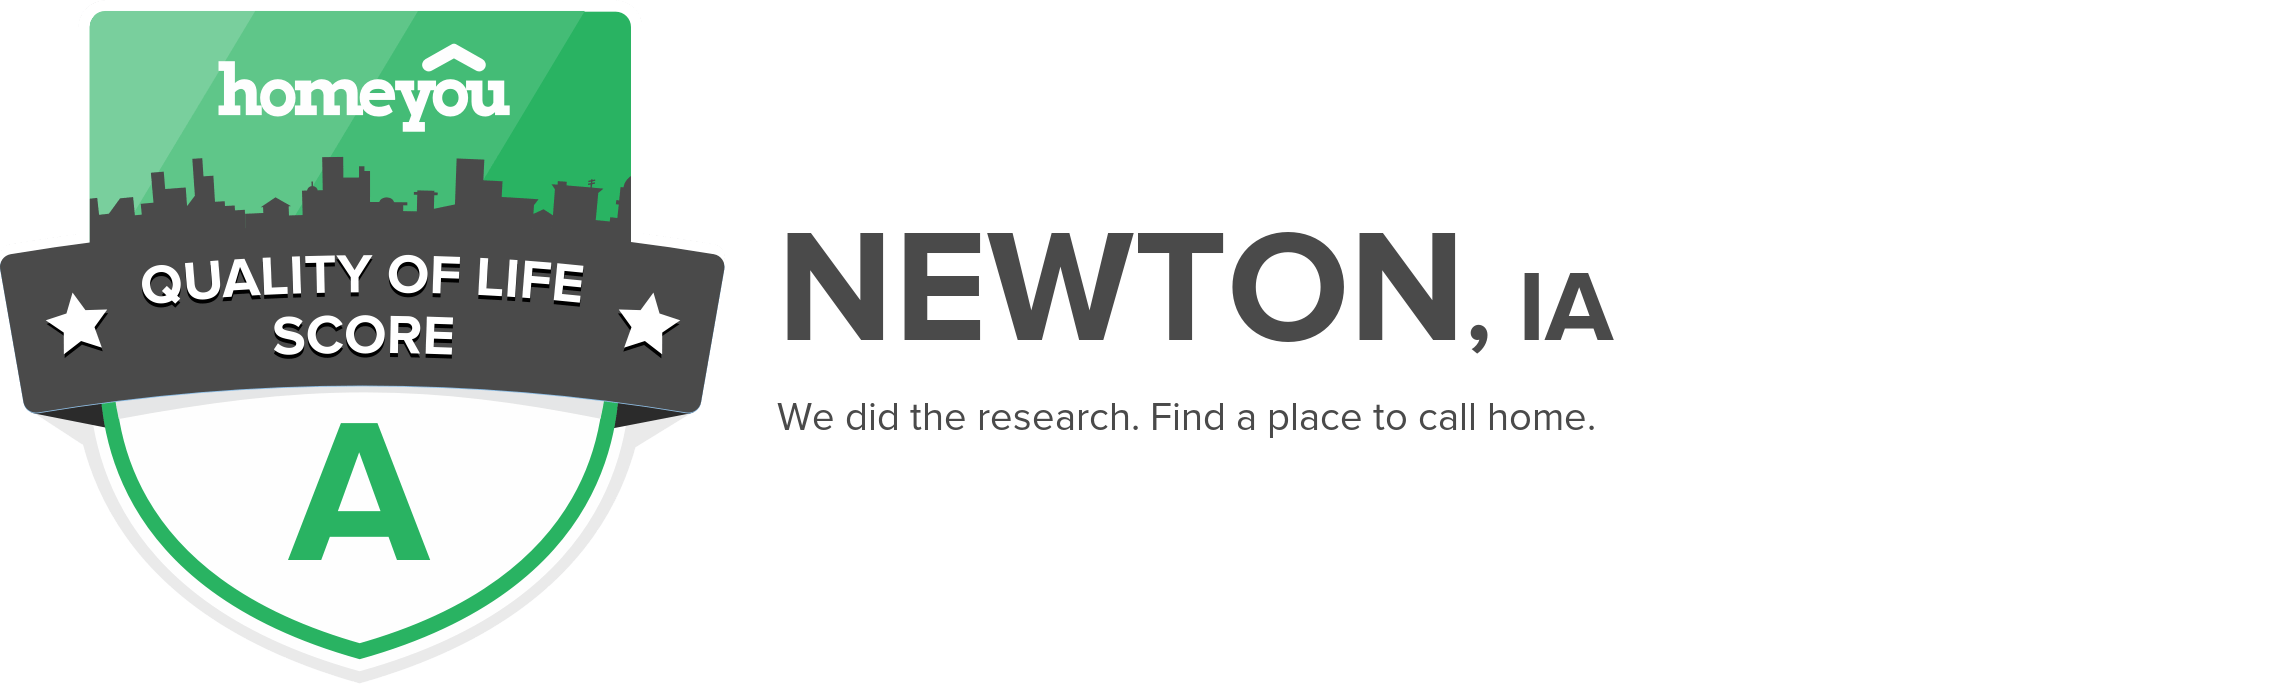 Newton, IA